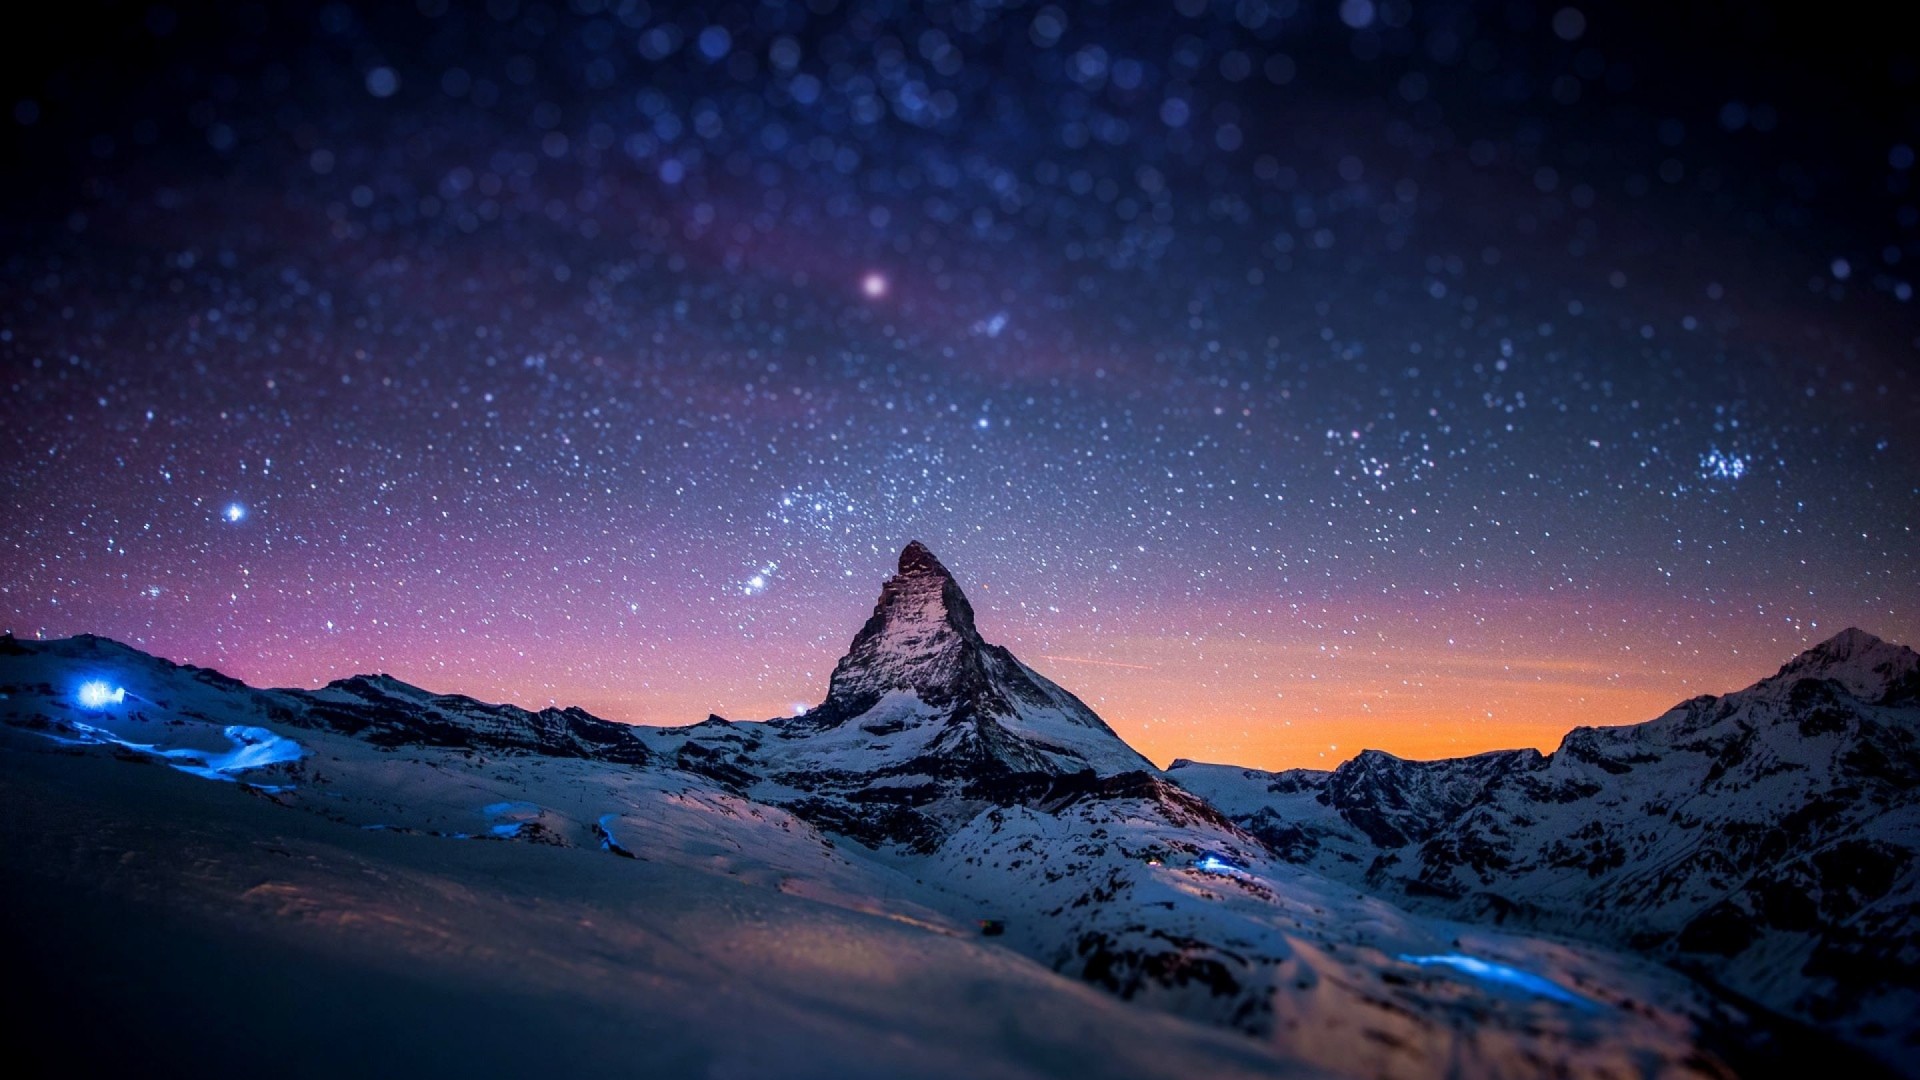 Starry Night Over The Matterhorn Wallpaper for Desktop 1920x1080